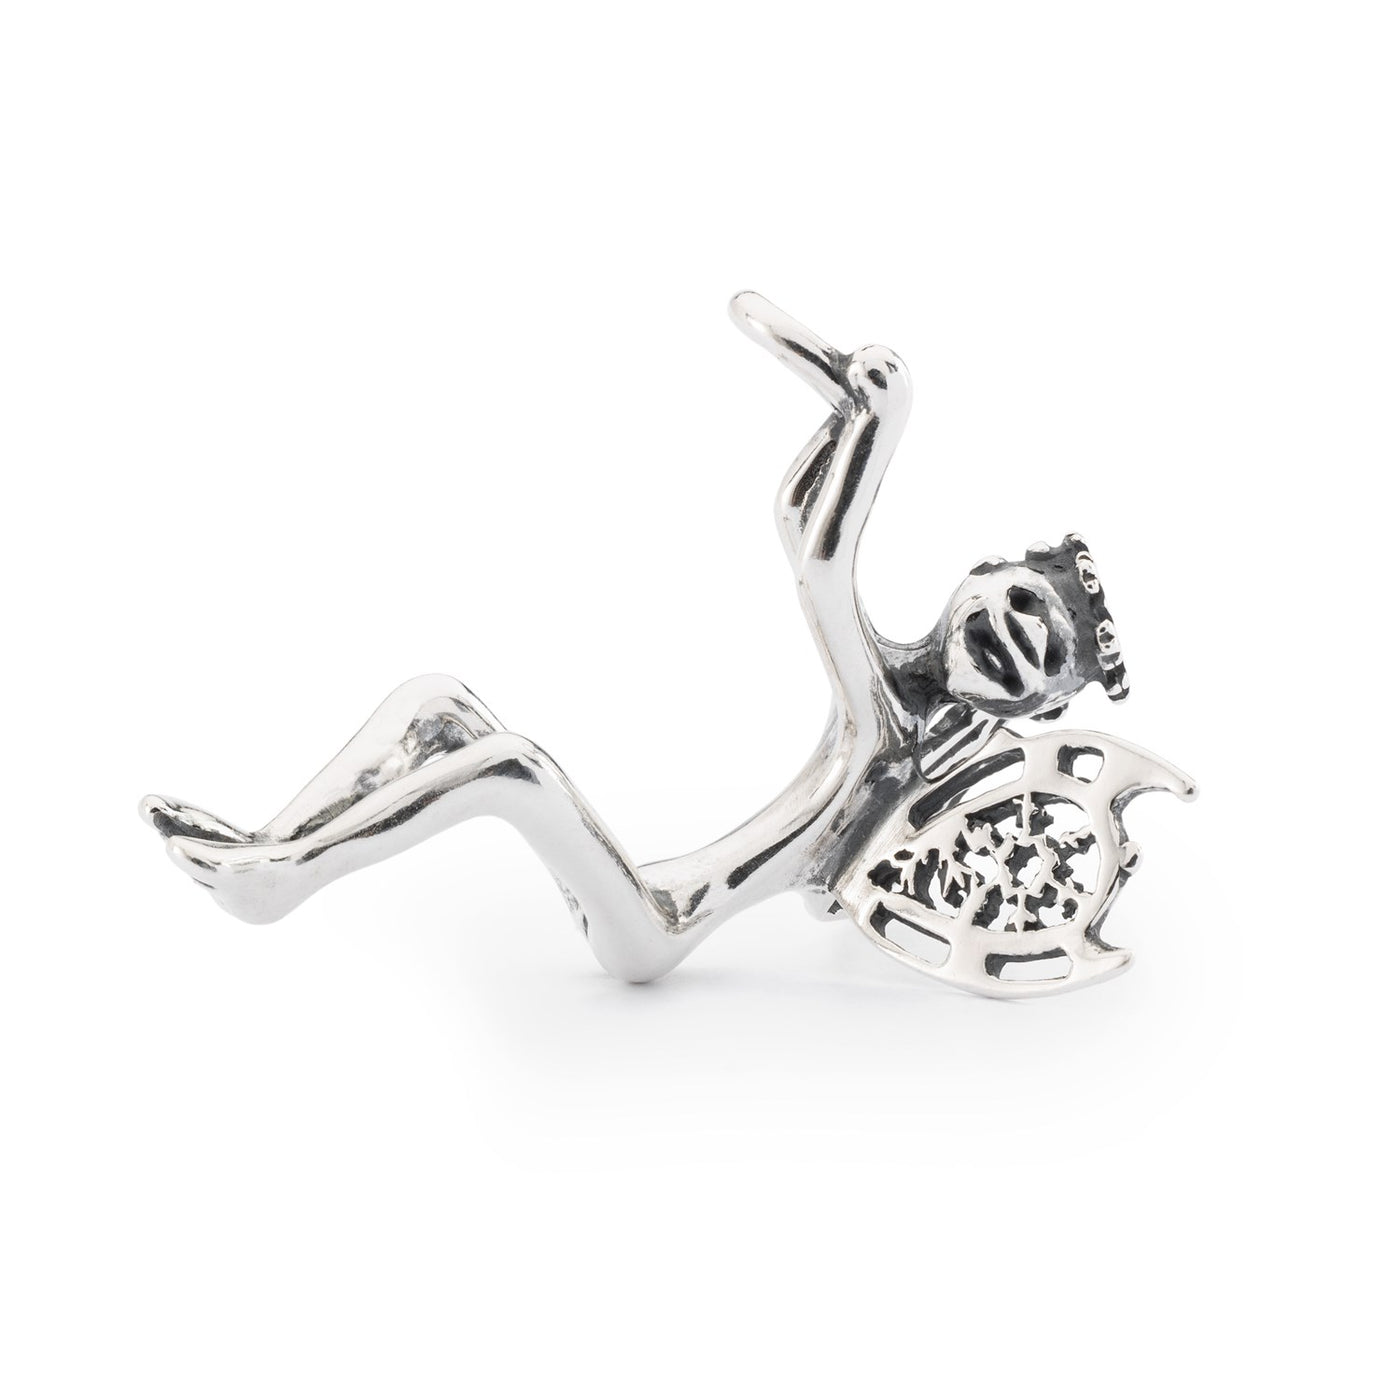 Sne-Alf vedhæng - Et fantasifuldt og fortryllende sølvvedhæng med et fe-design. Perfekt til at tilføje en smule fantasi til din smykkesamling.